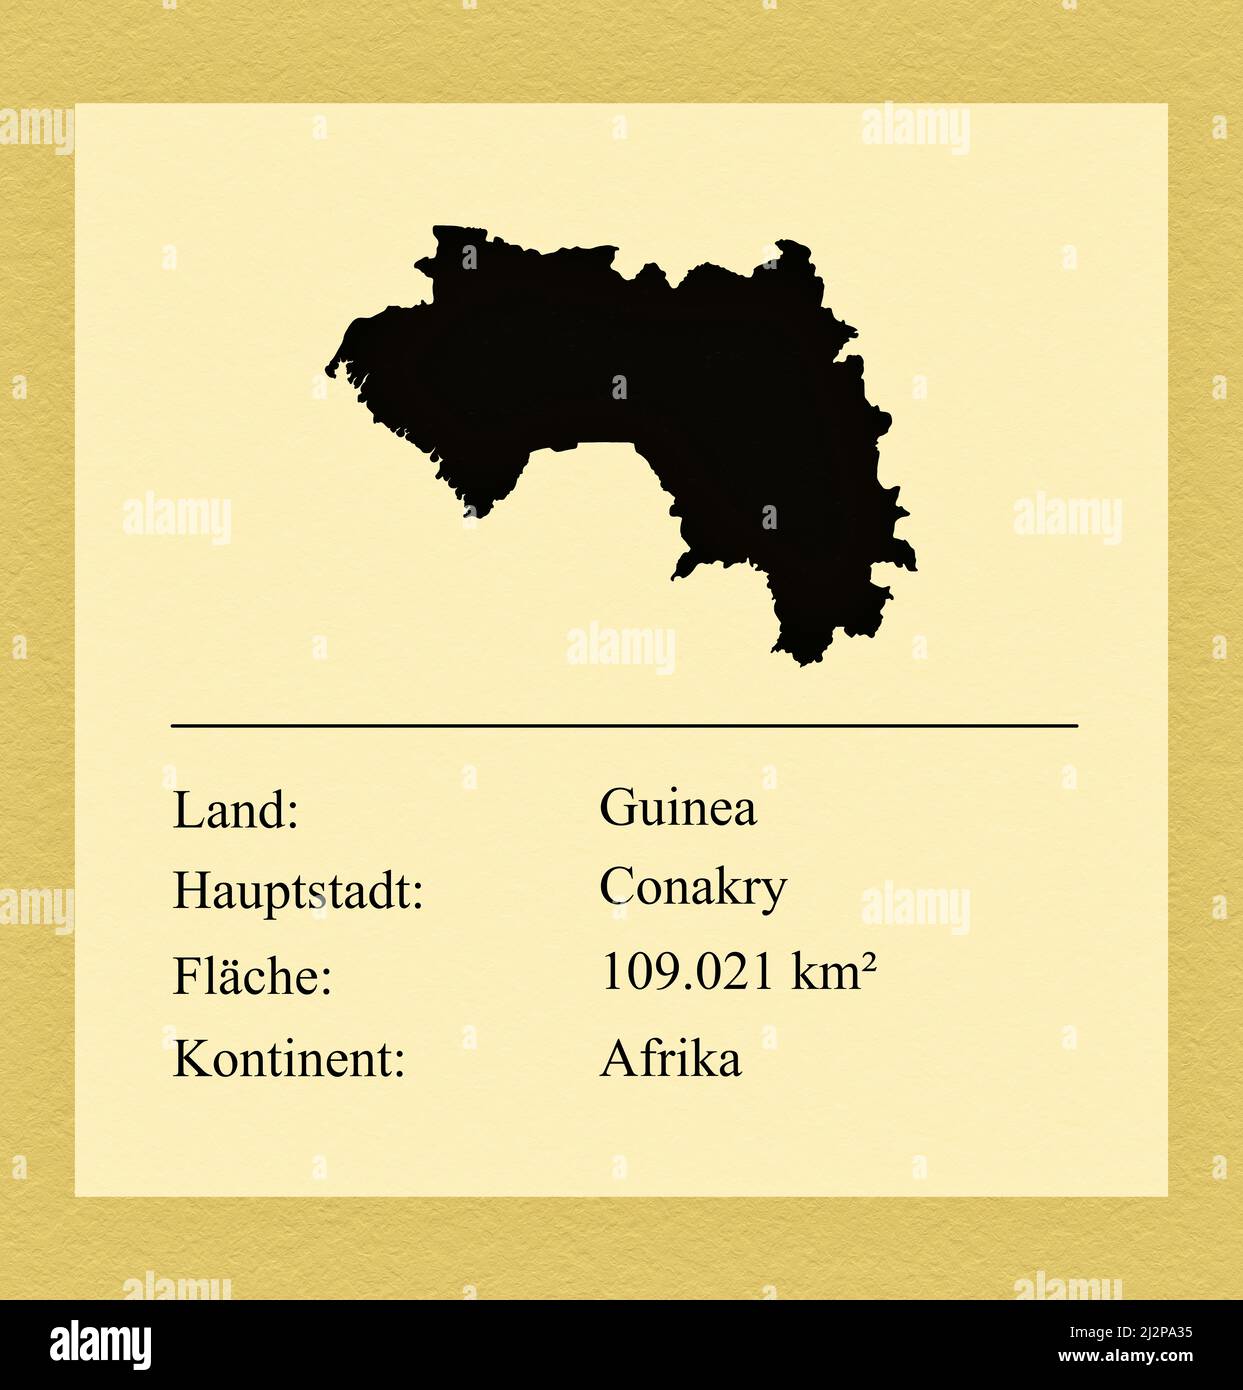 Umrisse des Landes Guinea, darunter ein kleiner Steckbrief mit Ländernamen, Hauptstadt, Fläche und Kontinent Foto Stock